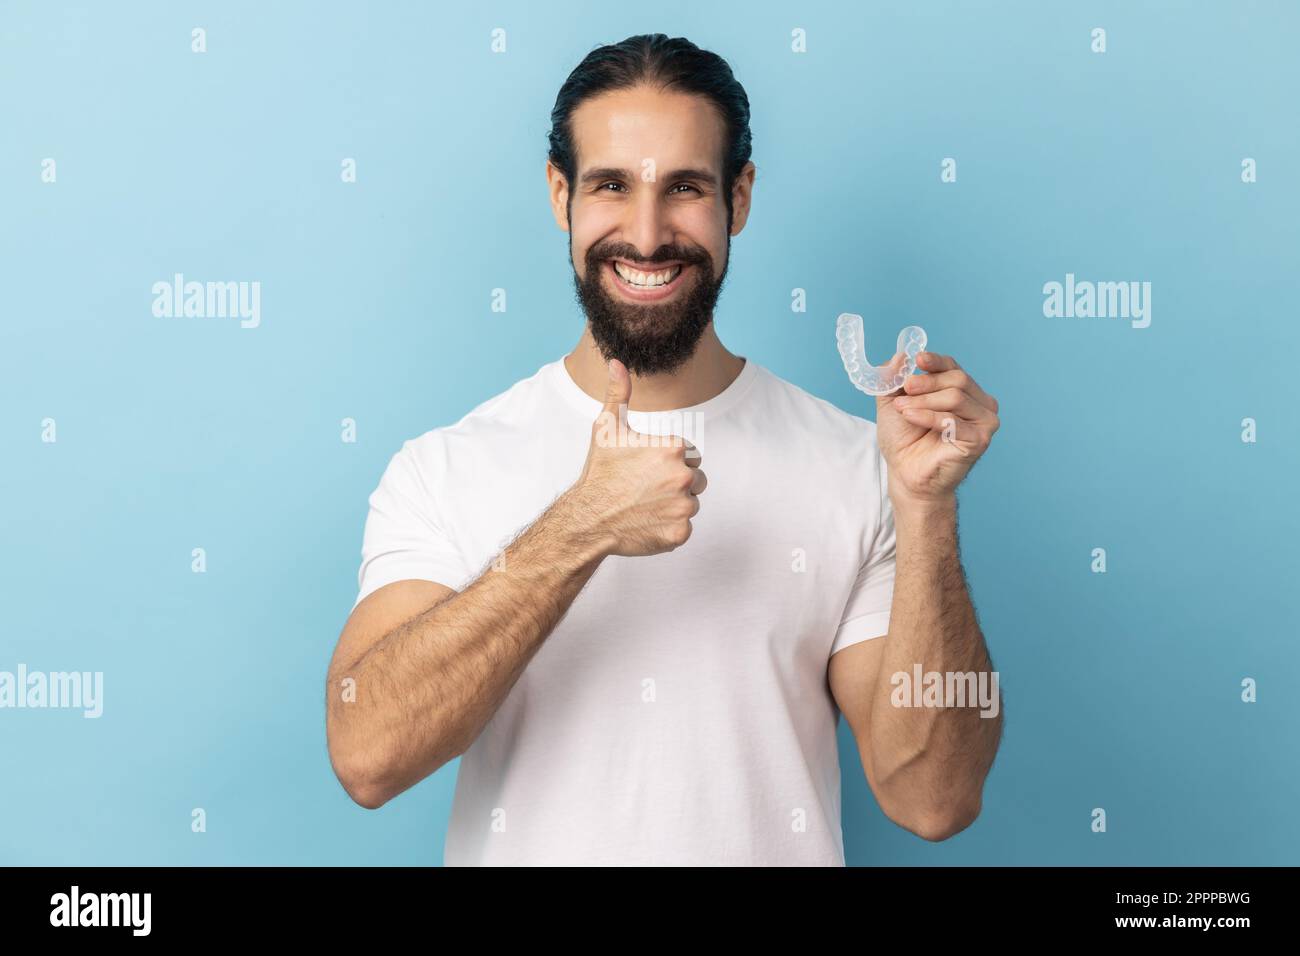 Ritratto dell'uomo con barba che indossa una T-shirt bianca che tiene il fermo dell'allineatore dentale, clinica dentale per i bei denti, mostrando il pollice in alto. Studio in interni isolato su sfondo blu. Foto Stock